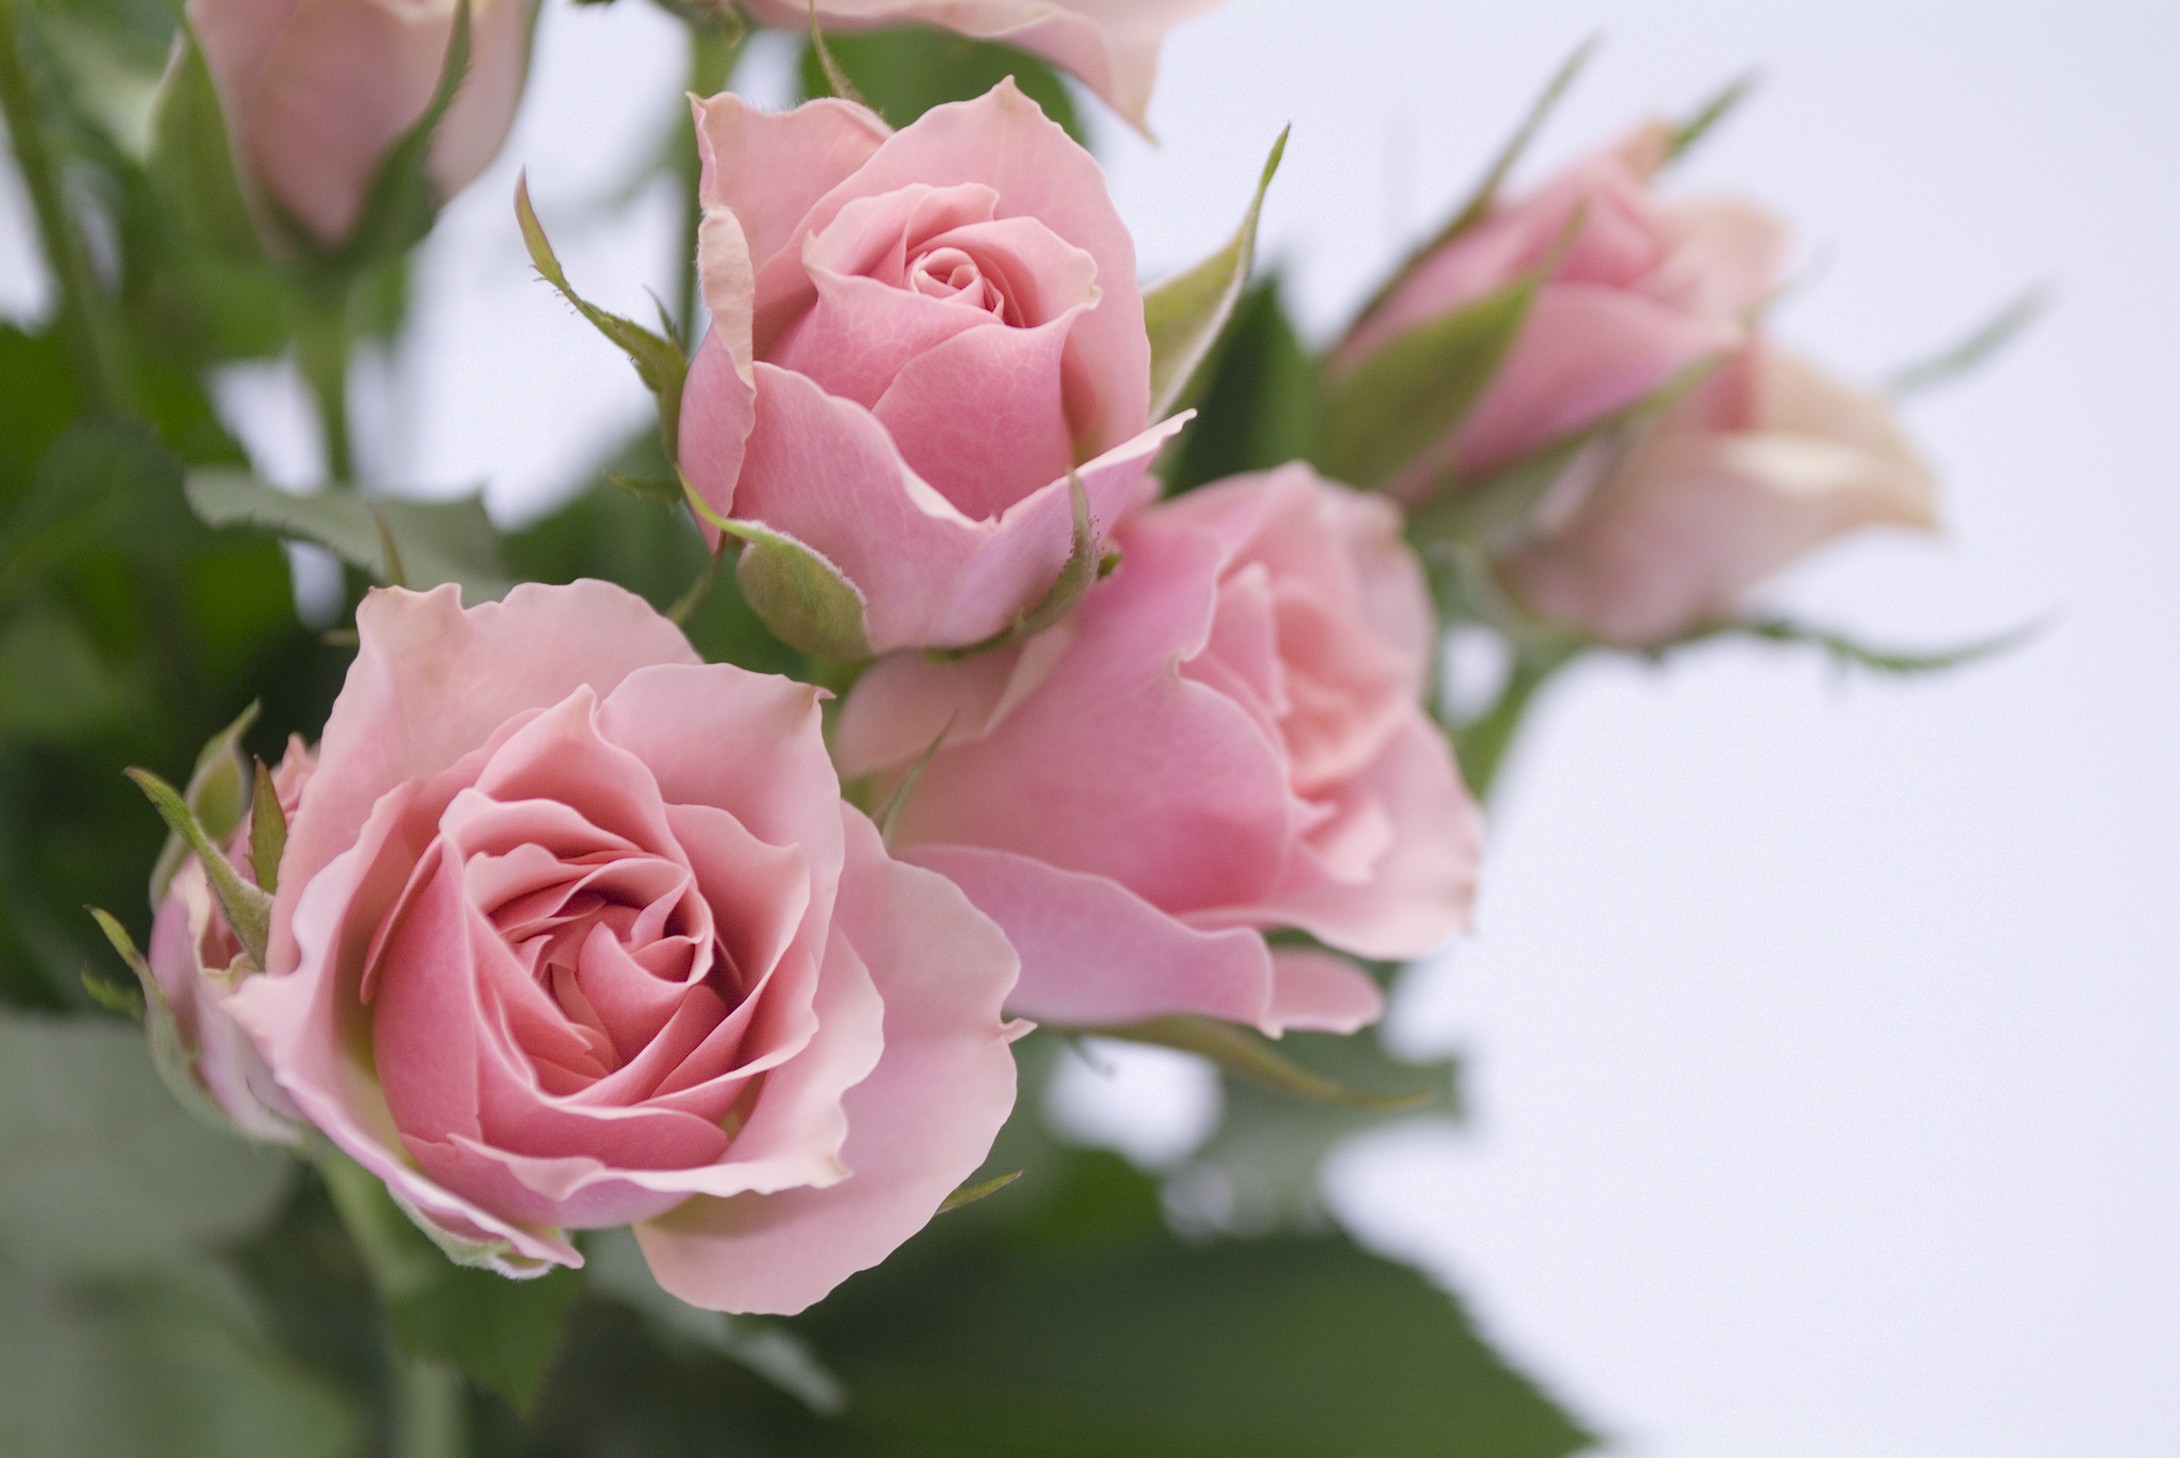 创意仿真玫瑰花 含苞花束客厅家居装饰仿真植物花艺假花绢布批发-阿里巴巴